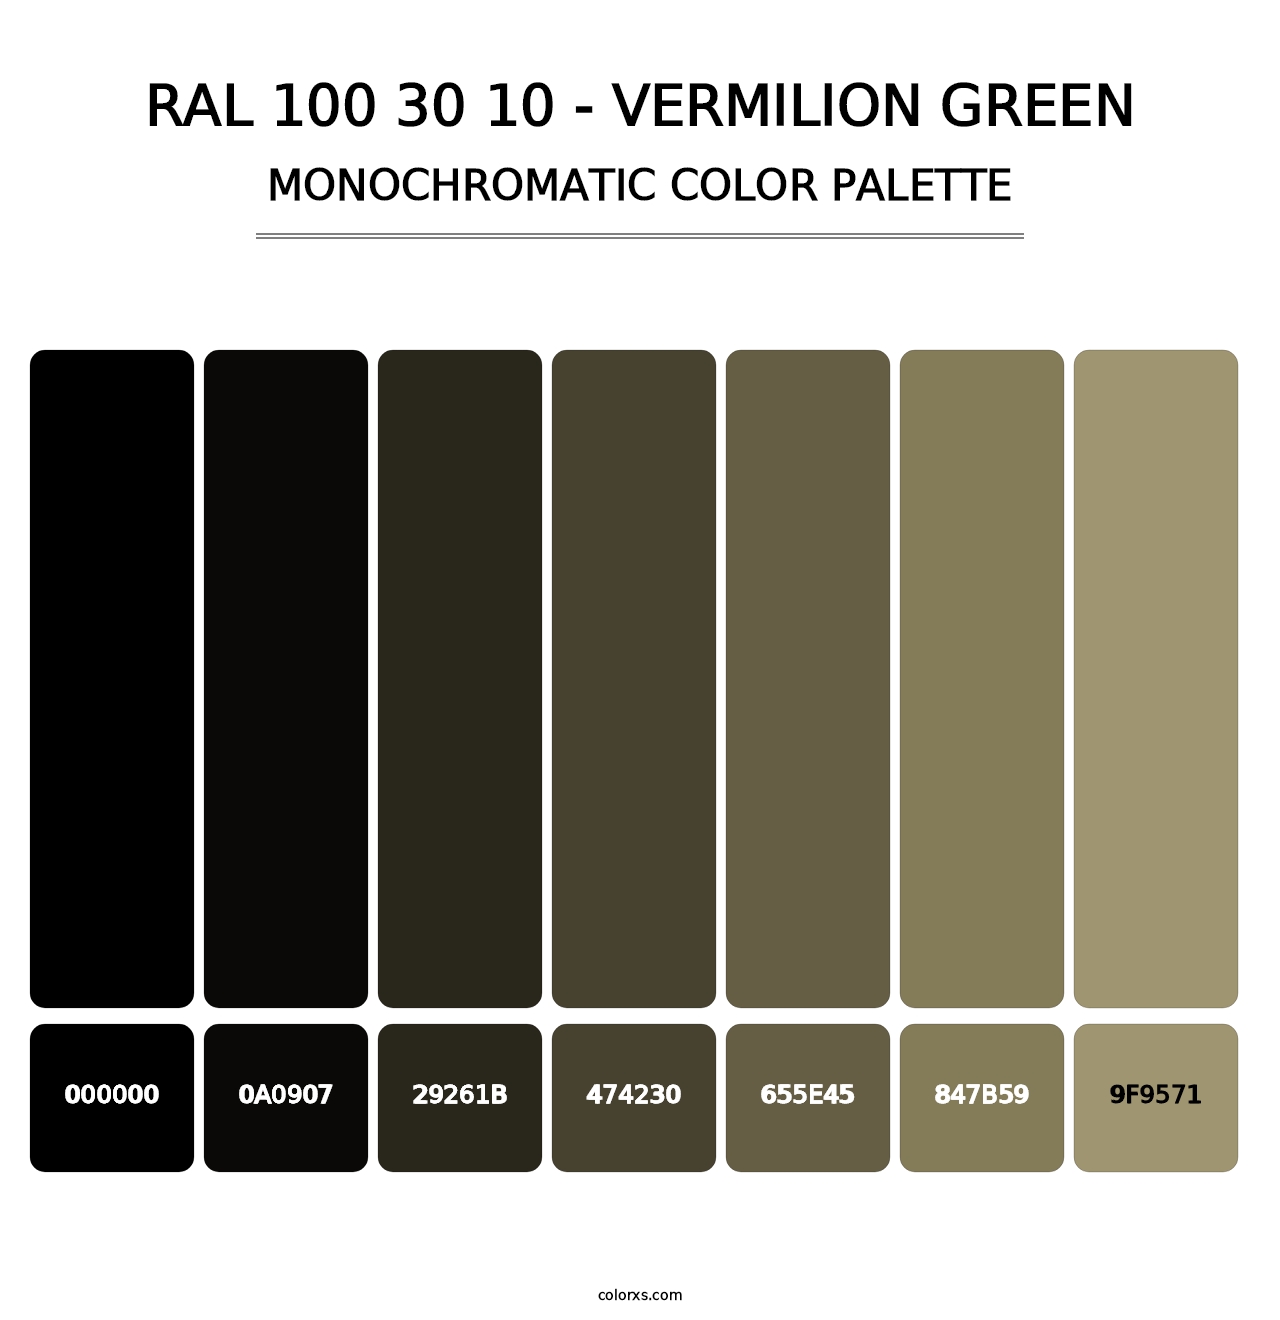 RAL 100 30 10 - Vermilion Green - Monochromatic Color Palette